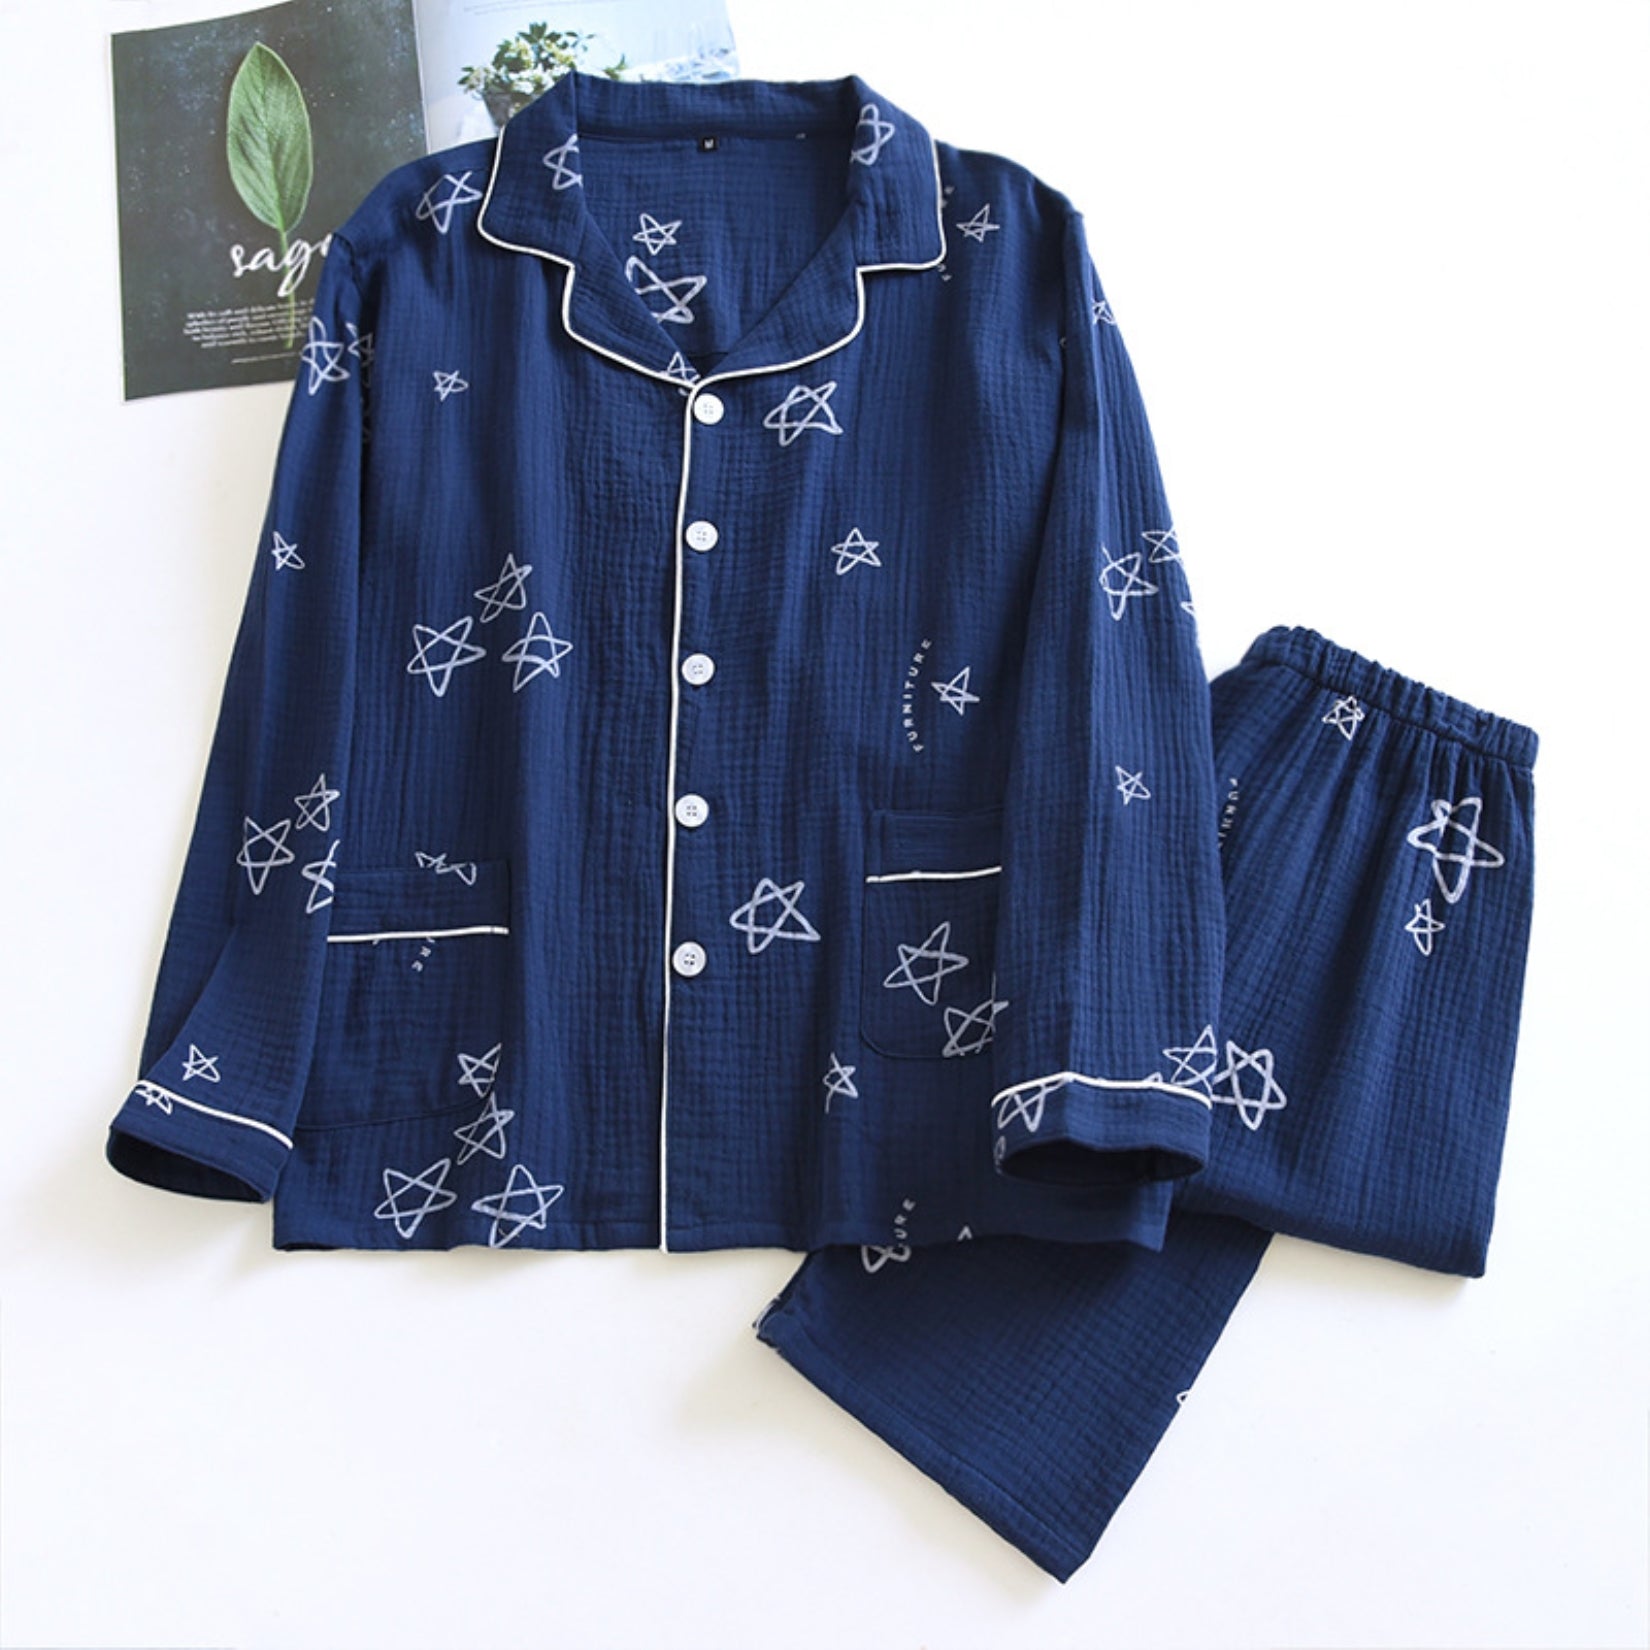 Star Doodle Print Pajama Shirt and Pants Coordinates for Women – Anna-Kaci